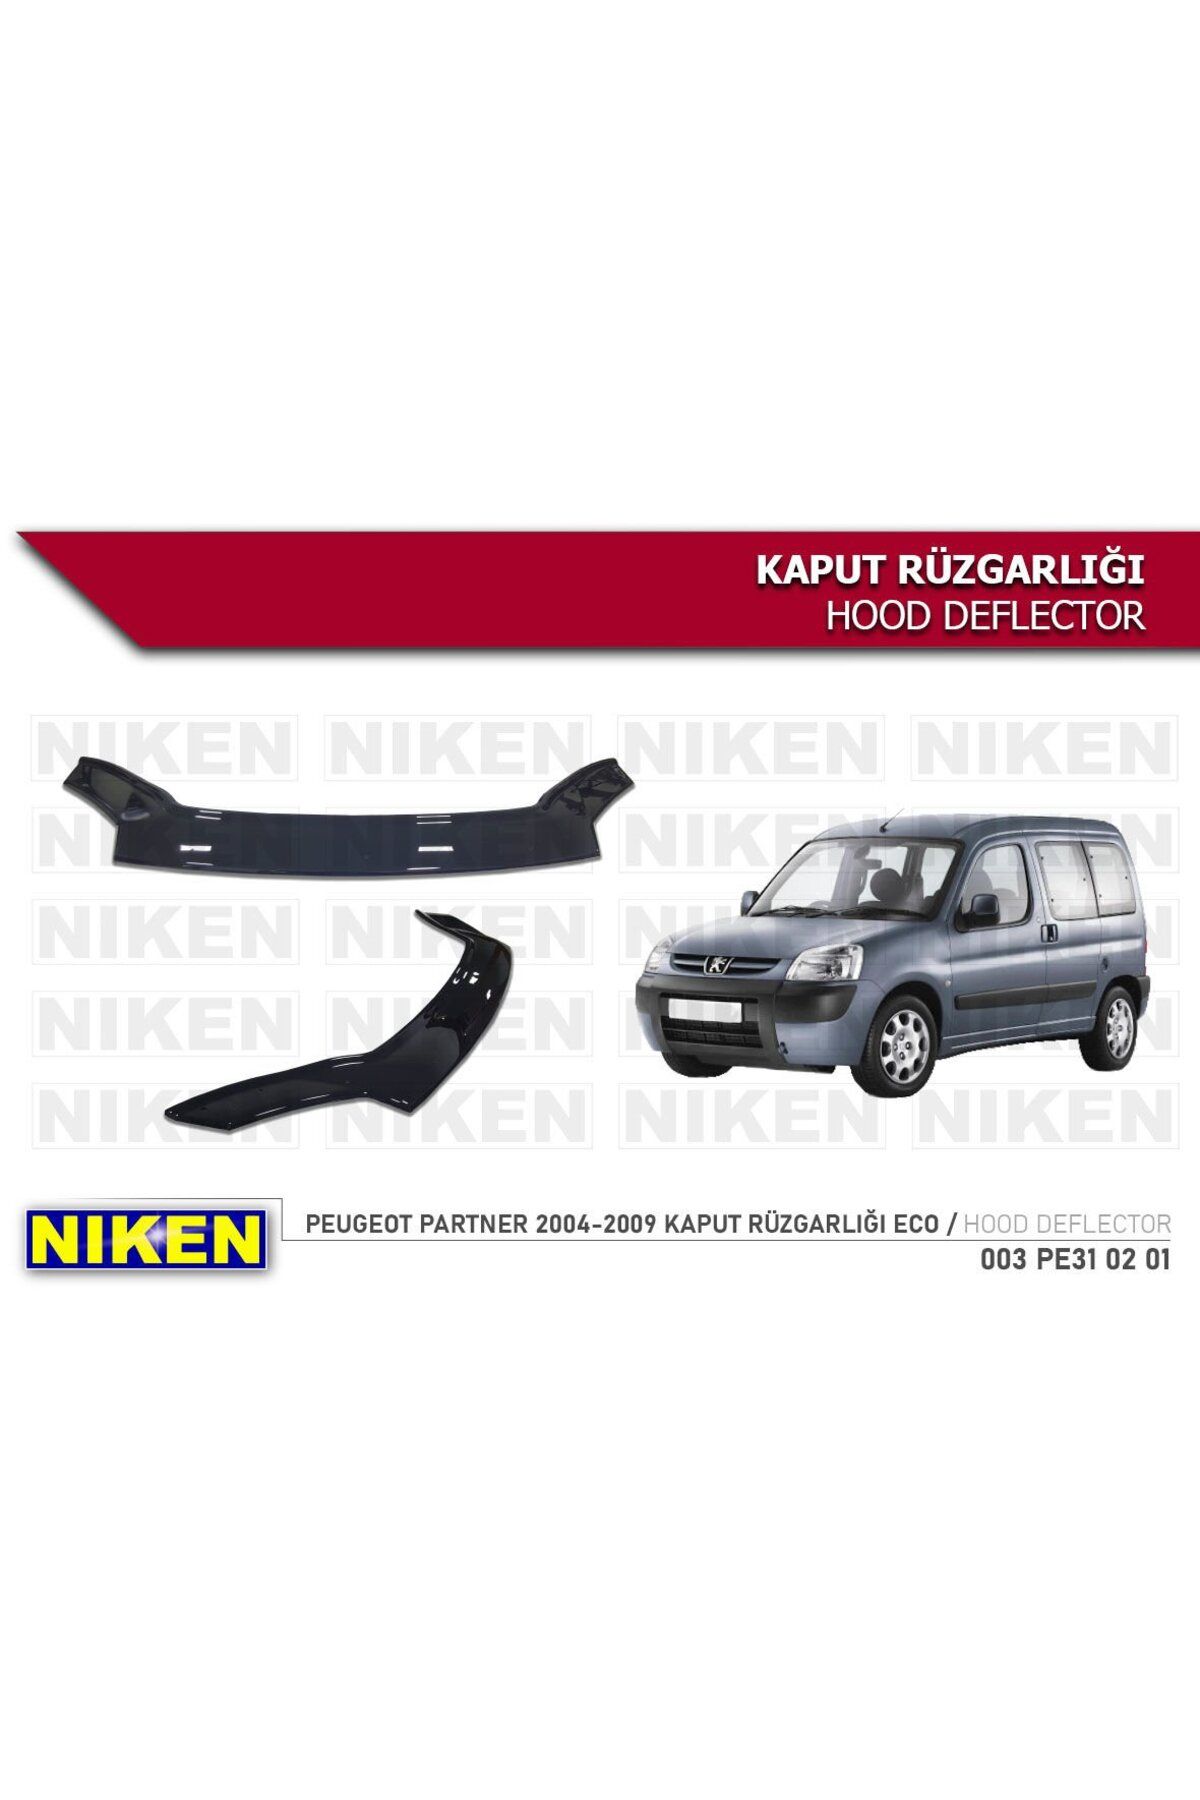 Niken Peugeot Partner Kaput Rüzgarlığı Koruyucu 2004-2009 arası Uyumlu